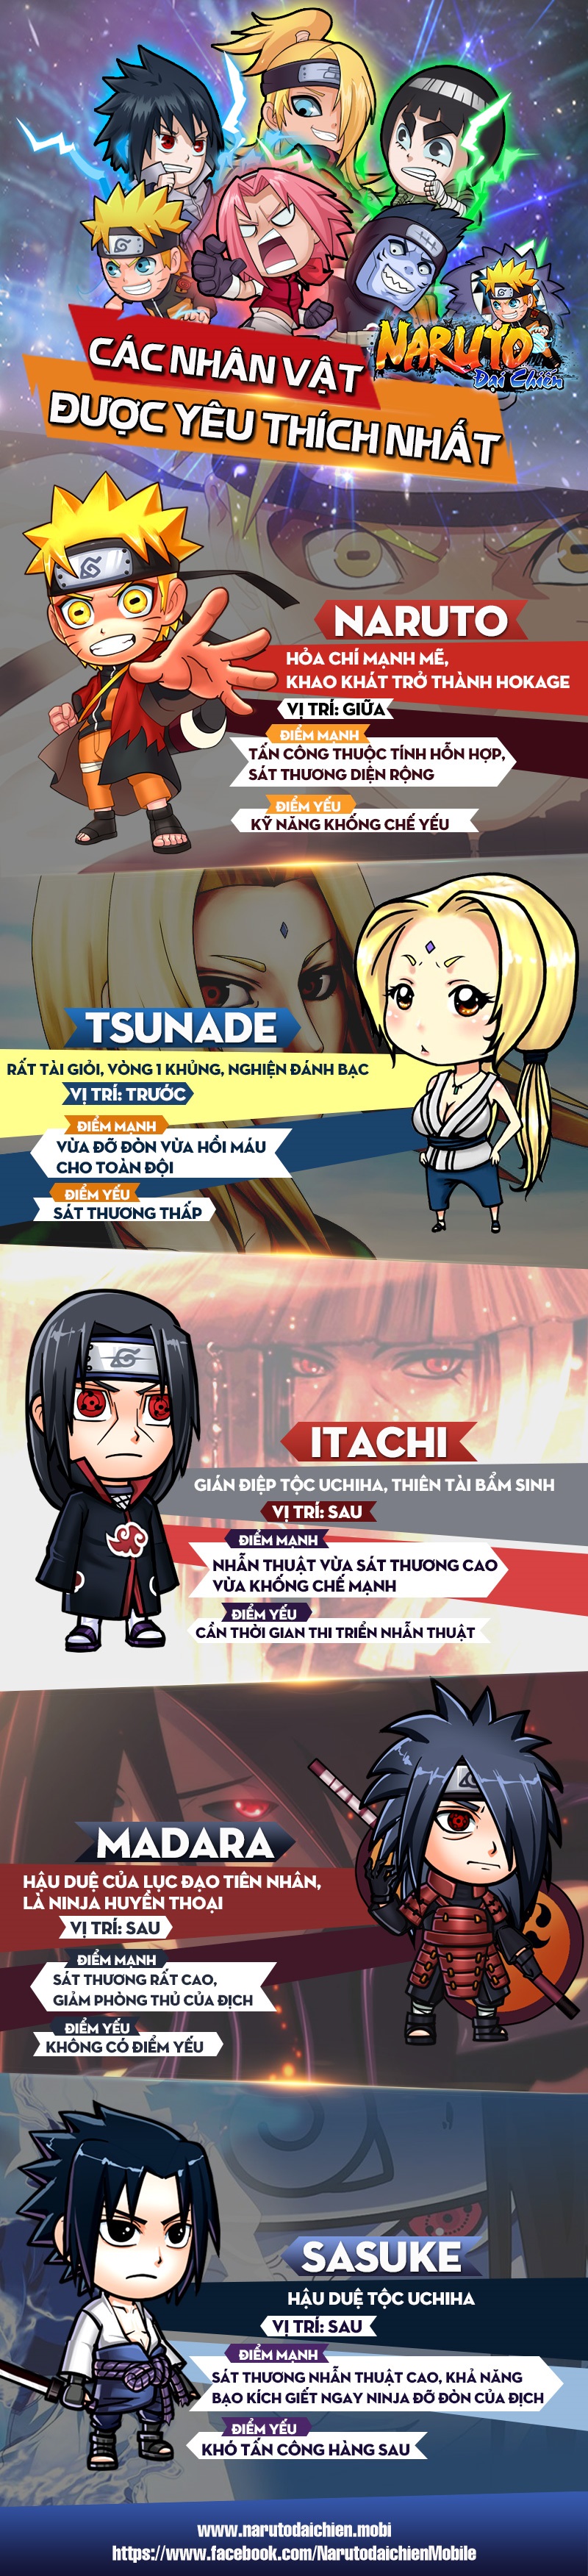 Infographic - Những Nhân Vật Được Yêu Thích trong Naruto Đại Chiến